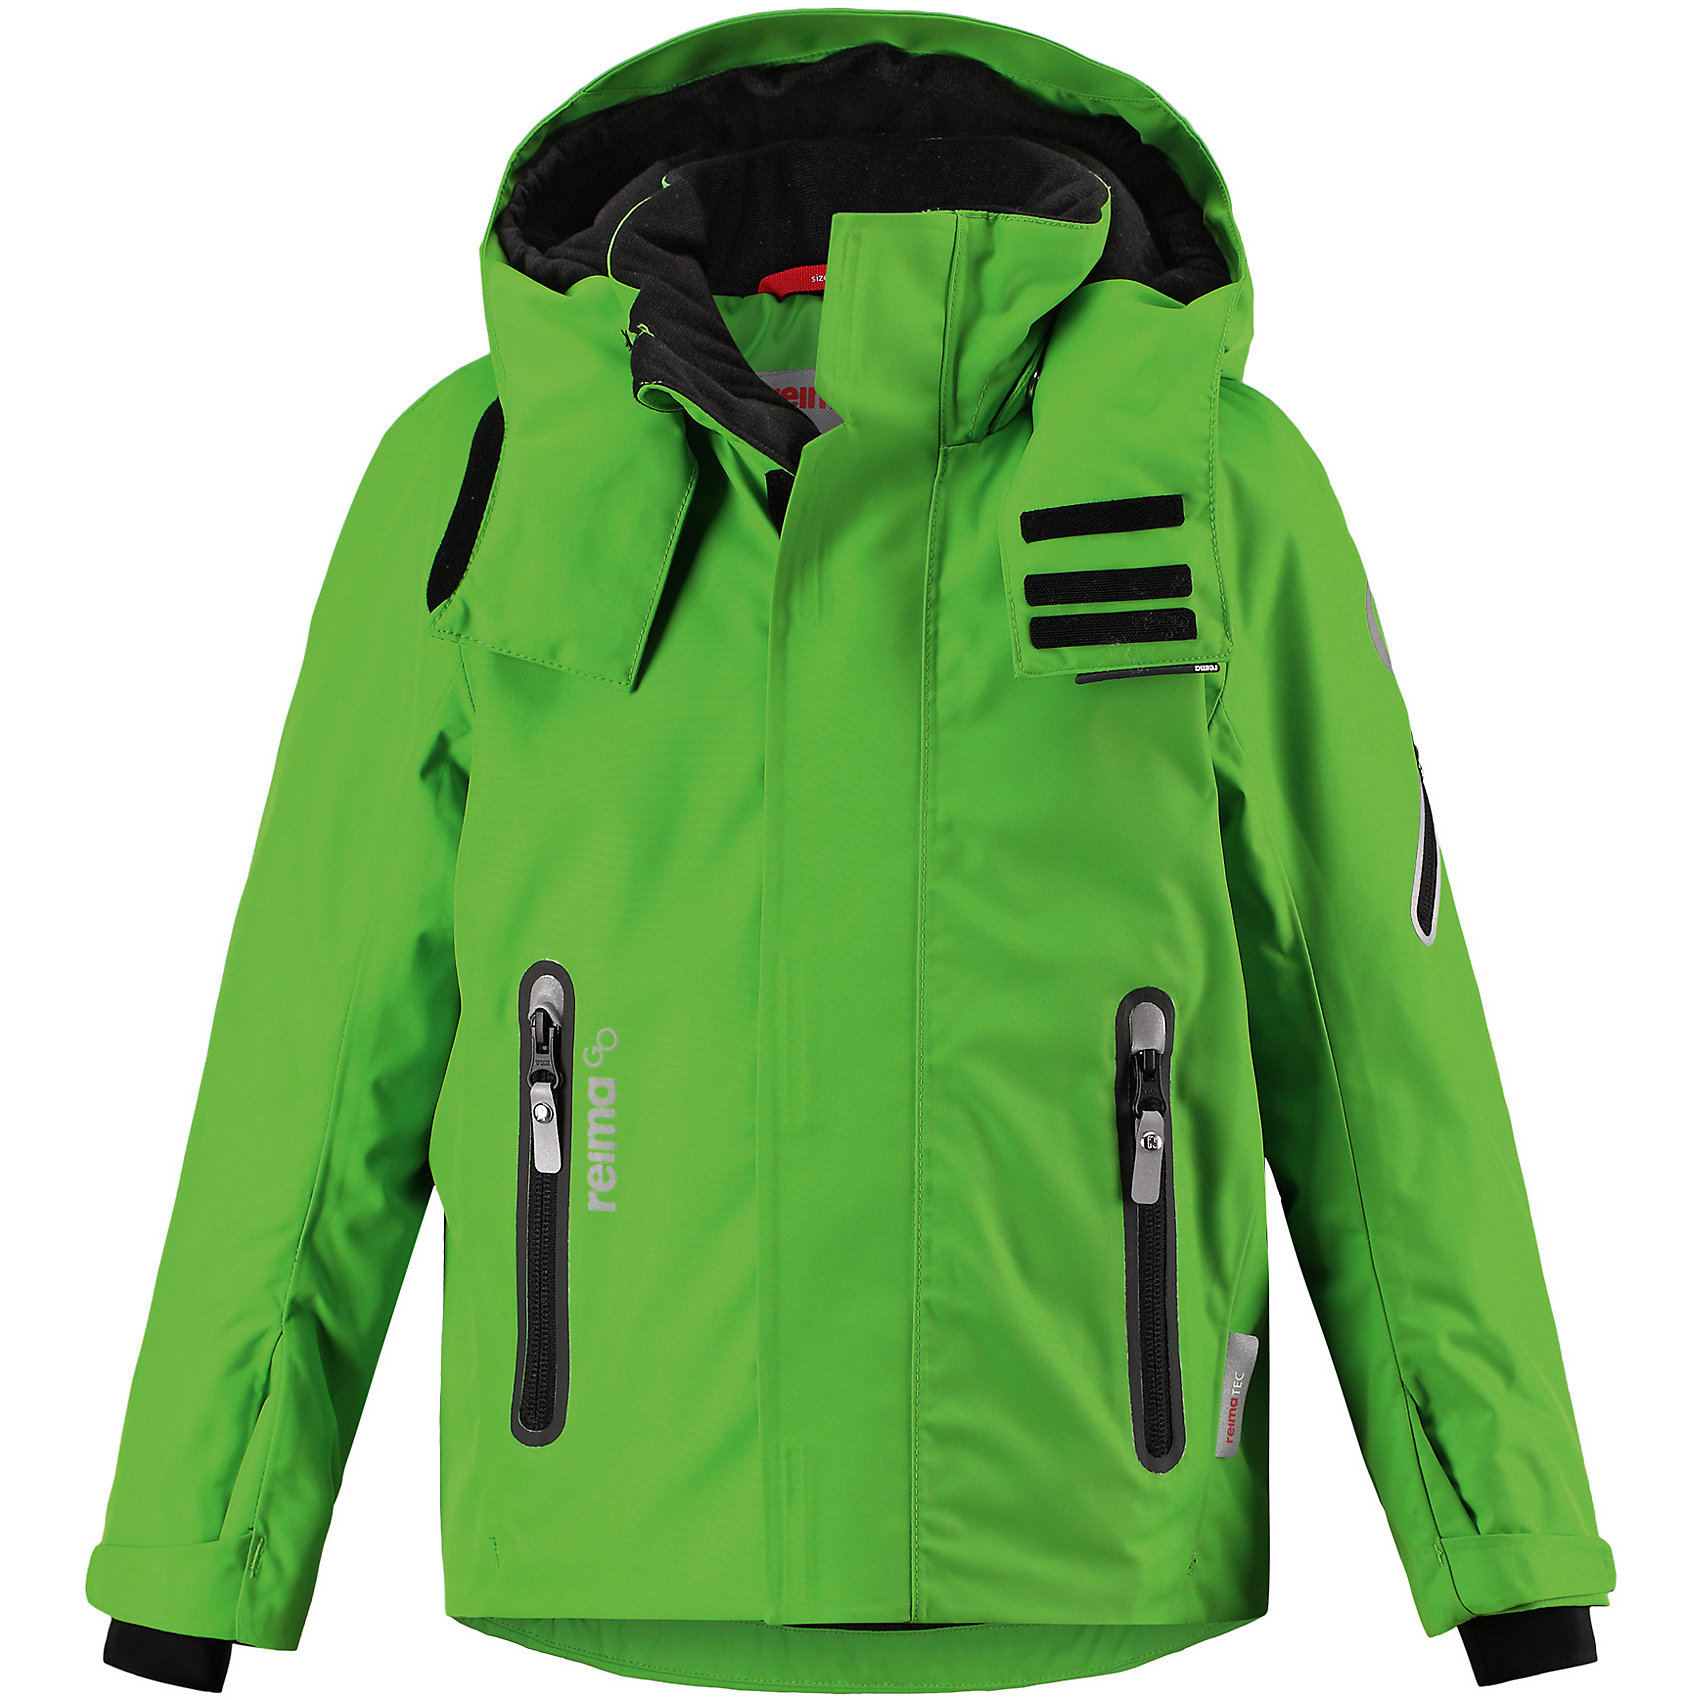 Купить куртку рейма. Куртка Regor Reima. Куртка Рейма 140 зеленая зима. Куртка Рейма на мальчика зима зеленая. Куртка Reima Regor 521571b.